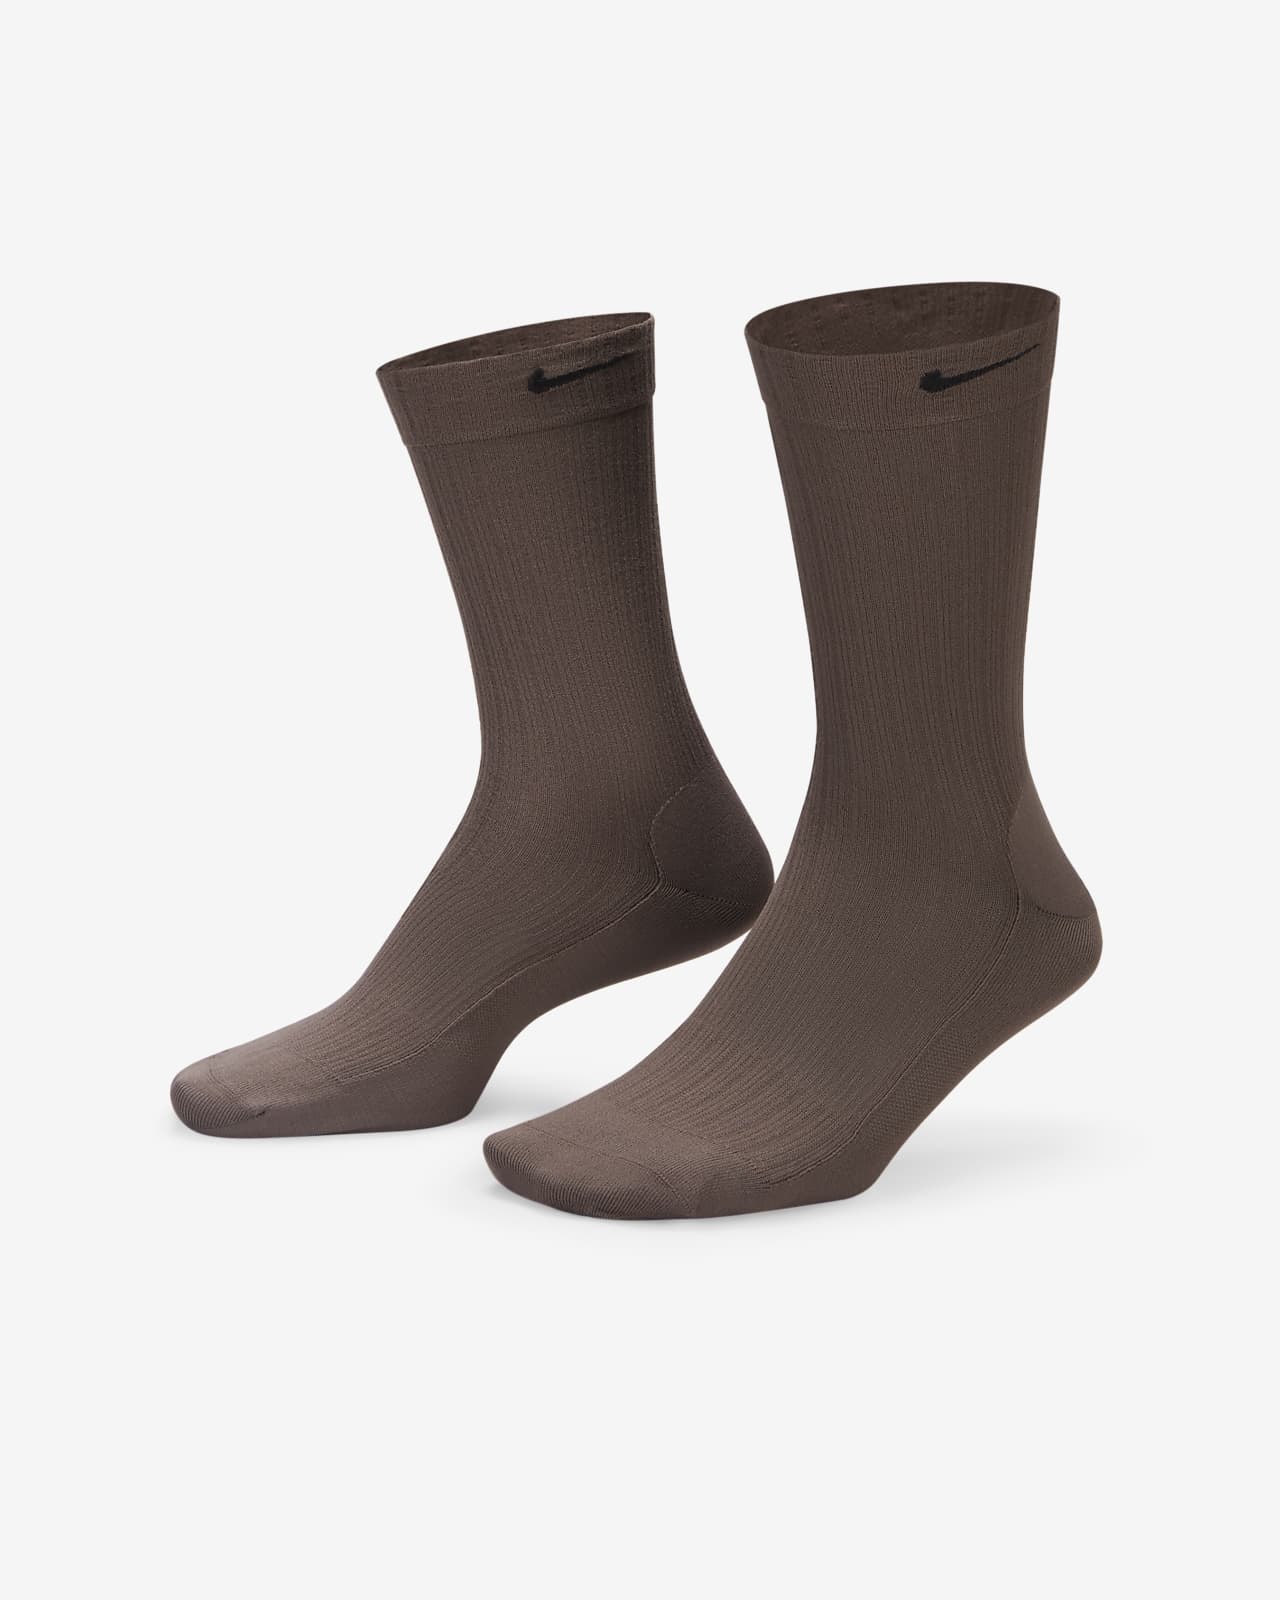 Chaussettes mi-mollet transparentes Nike pour femme (1 paire)